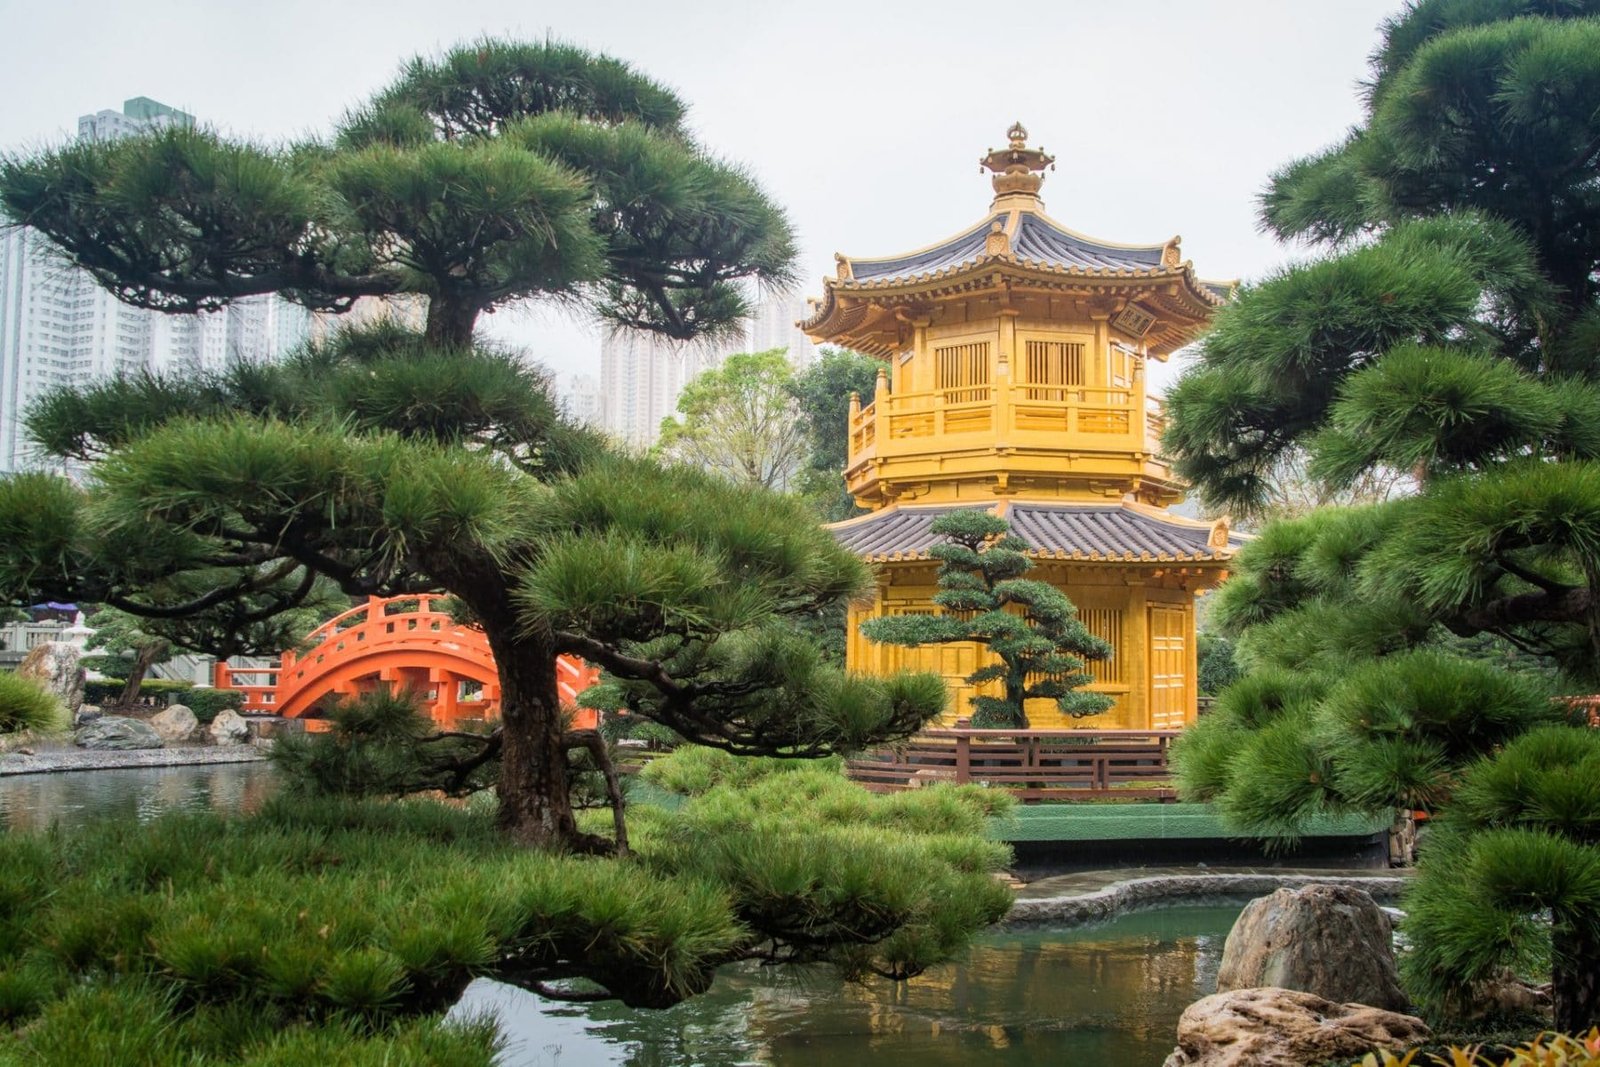 le pavillon doree - jardins nan lian - hong kong